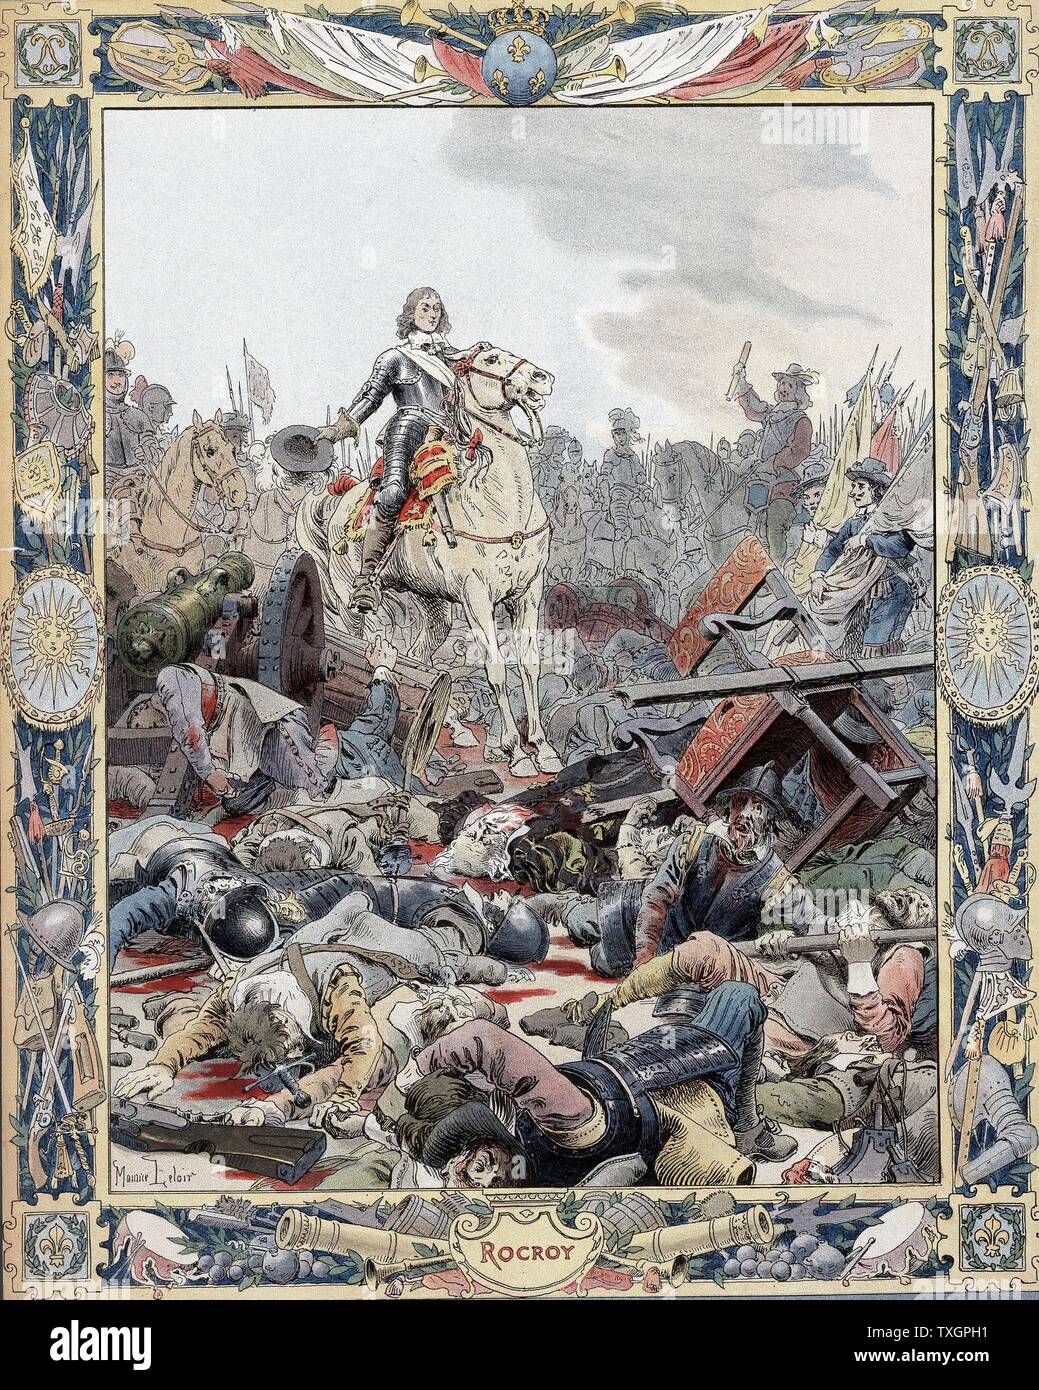 Dreißig Jahre Krieg: Schlacht von Rocroi (rocroy), 19. Mai 1643, Spanisch besiegt durch die Franzosen unter Duc d'Enghien, Prince de Conde (1621-1686), bekannt als der Große Conde. Lithographie Stockfoto